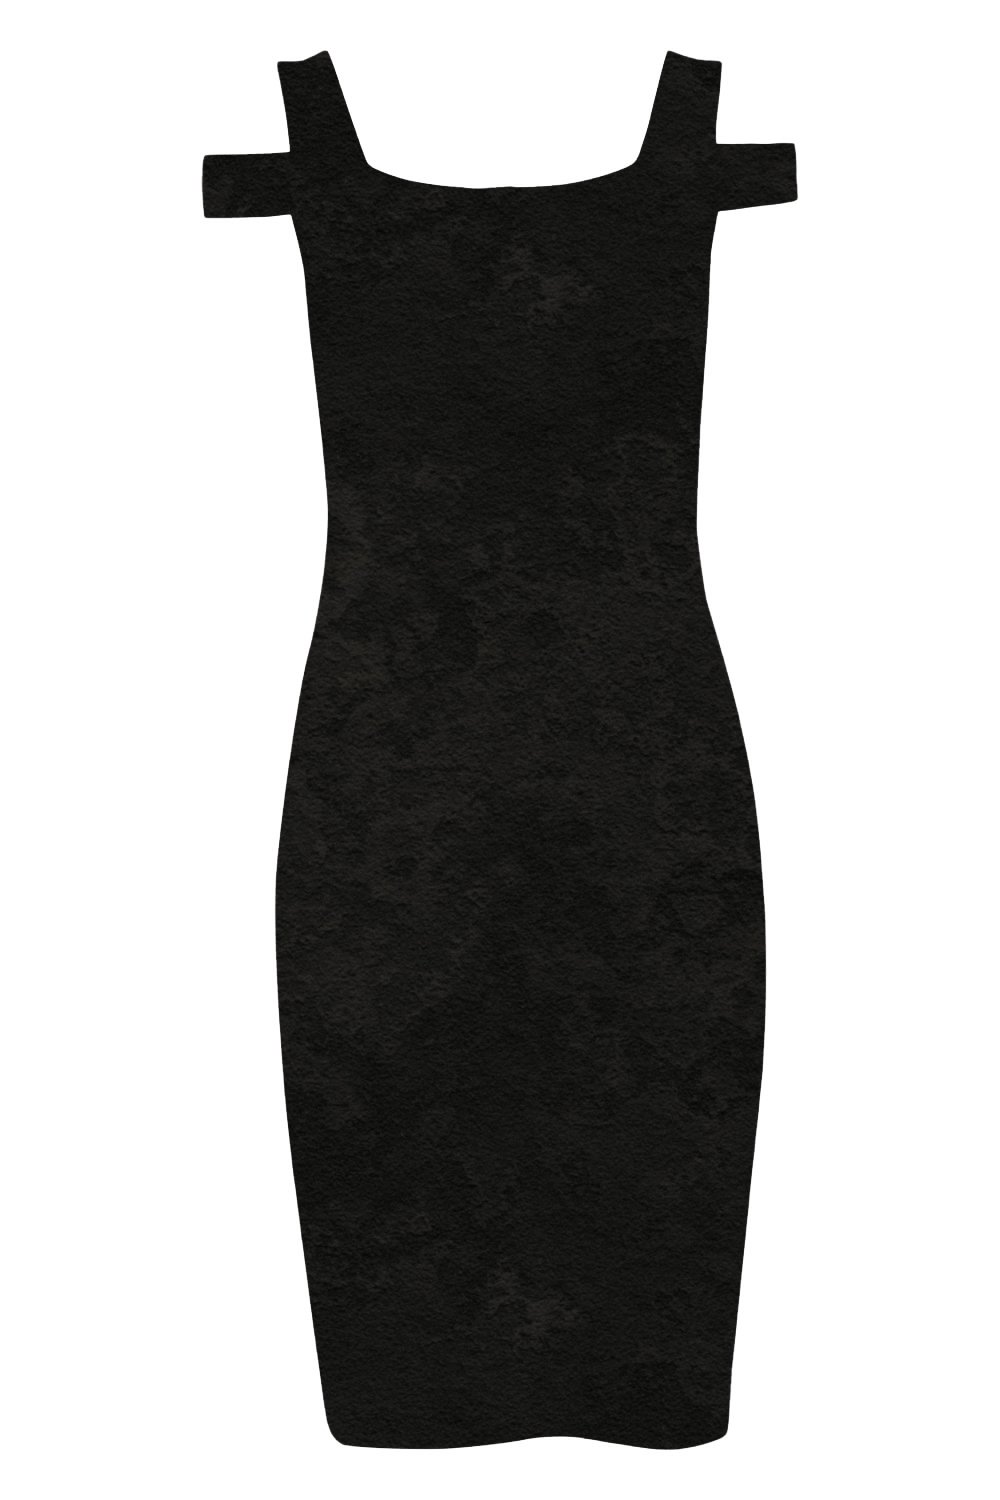 Velvet Cold Shoulder Dress in Black - Roman Originals UK